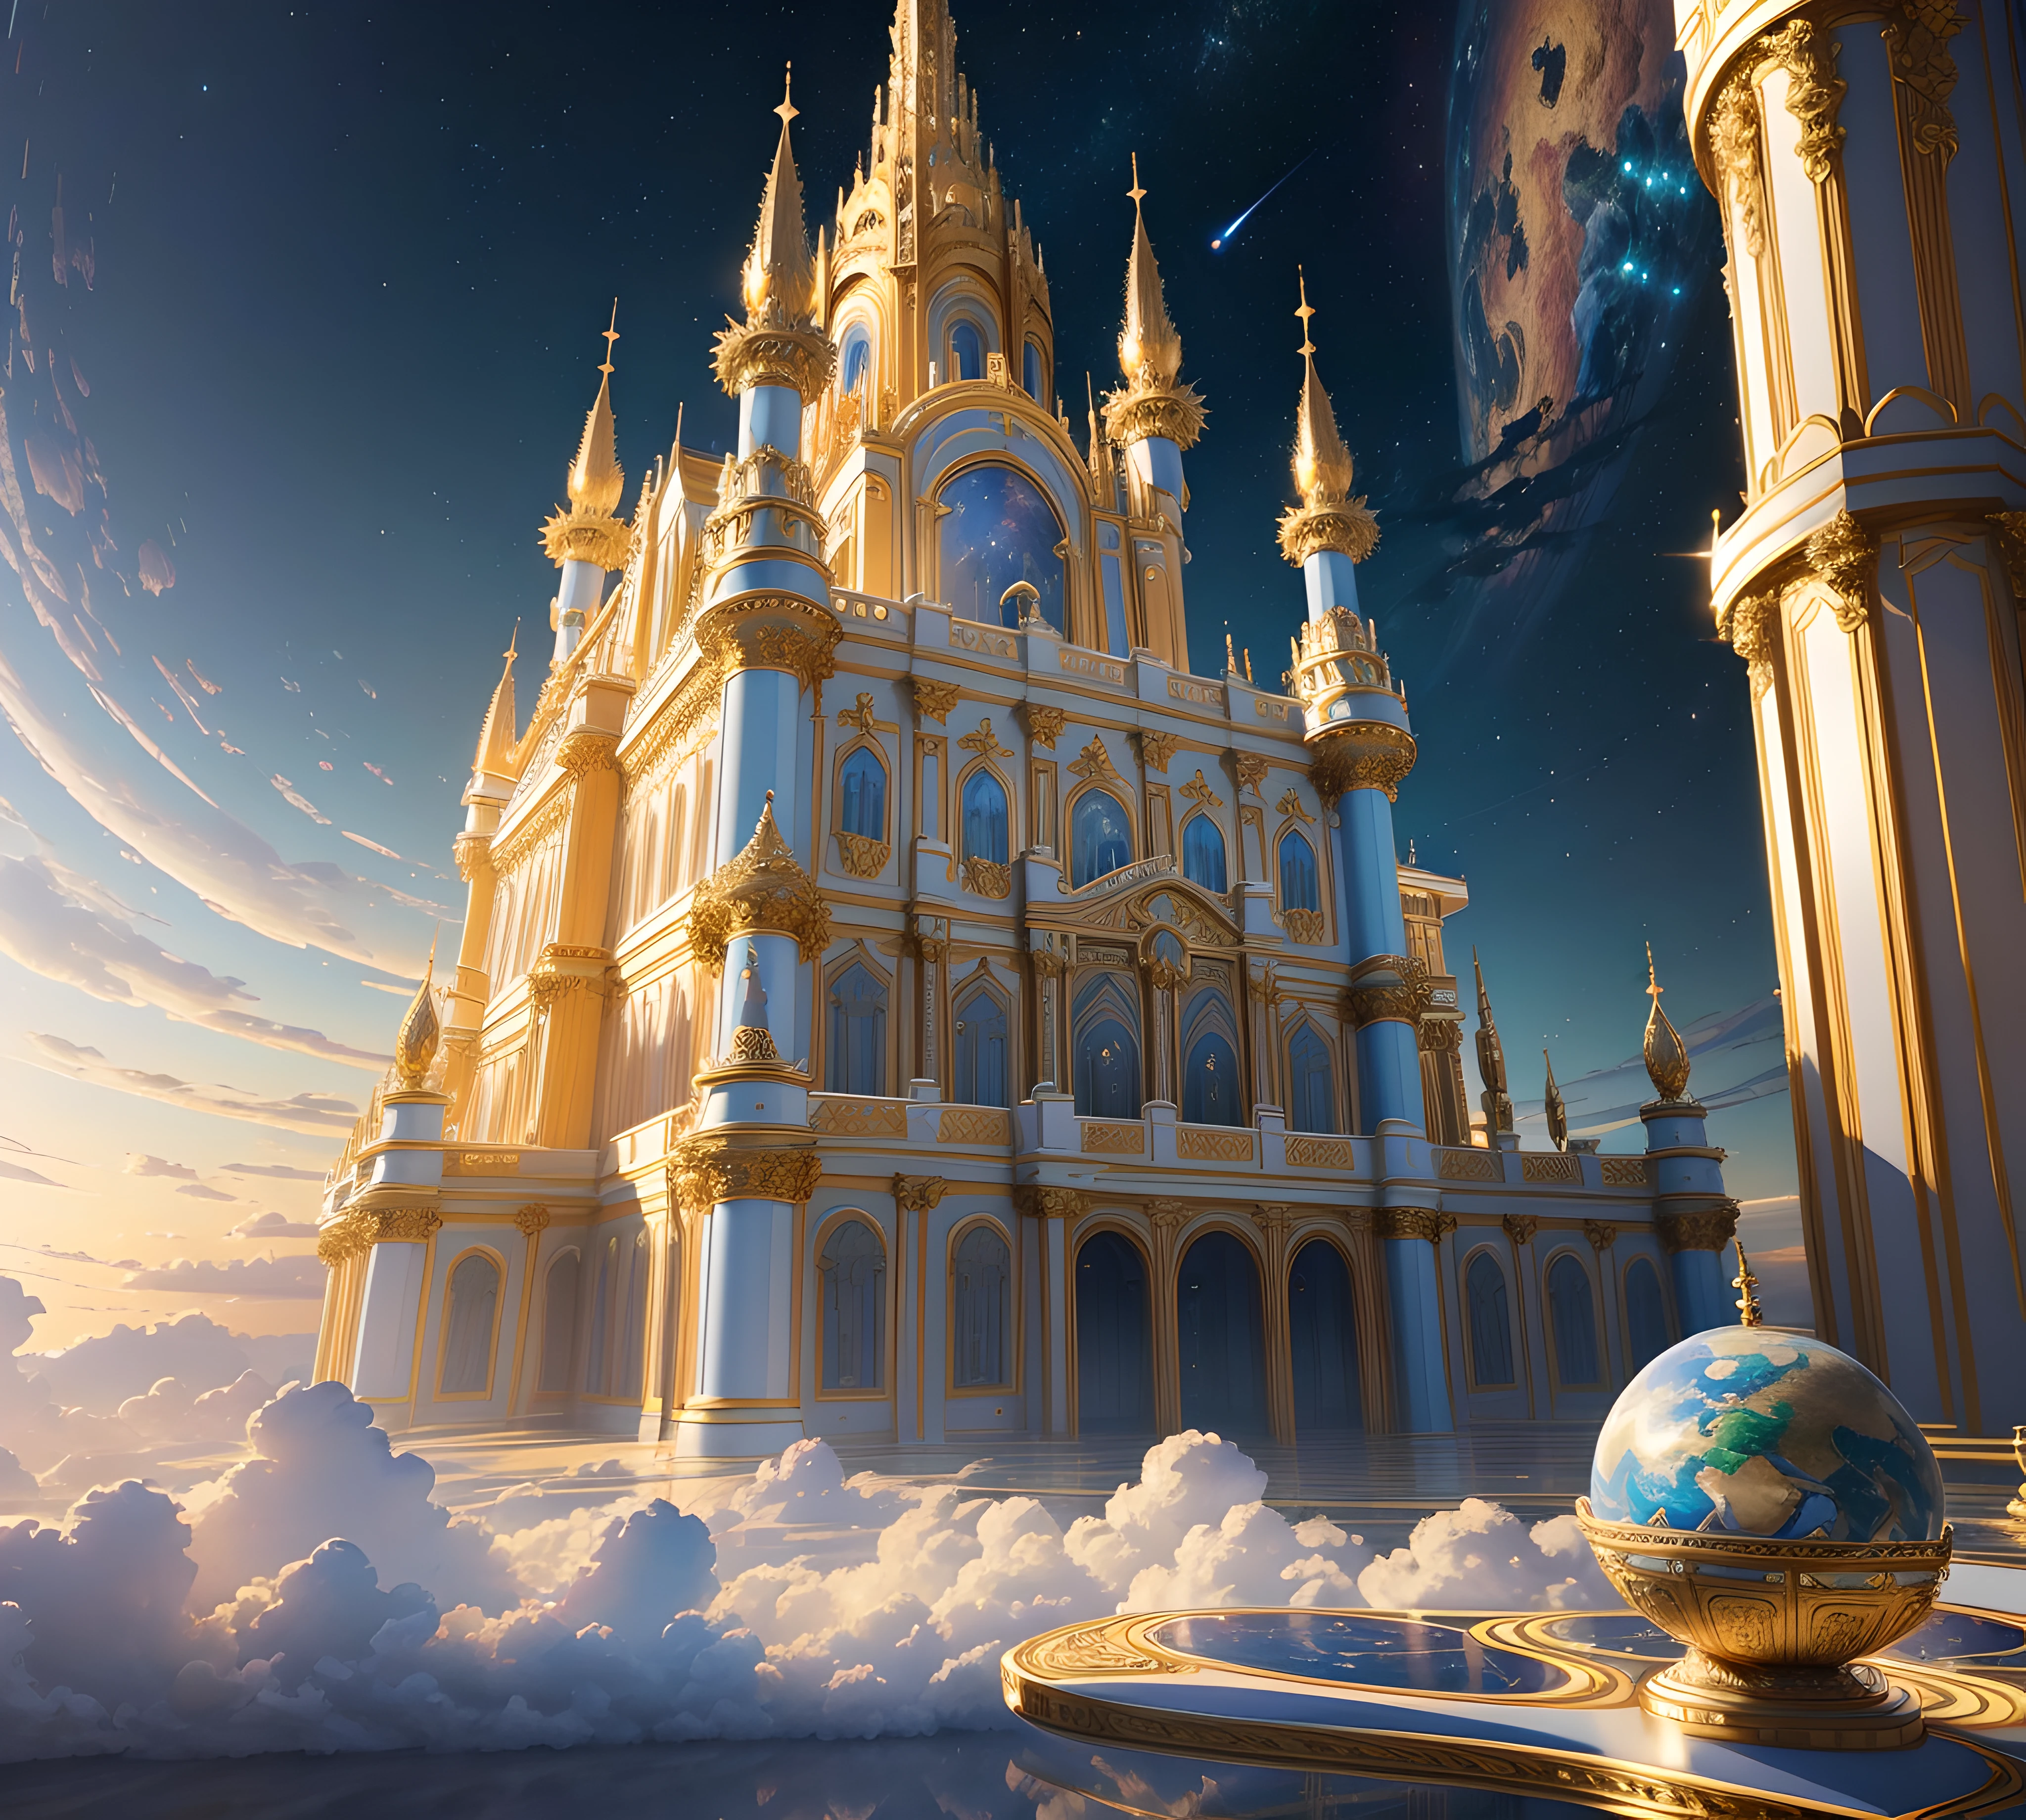 最好的品質, 傑作, 逼真的, (高解析度 CGI 圖稿 8k), create a architectural 傑作 of an opulent celestial castle floating in the sky, 全息反射淡蓝色的配色方案空灵, 金牌, 和蓝色大理石, 華麗的, 高分辨率, 3D-rendered 傑作 of digital art, 天上, 夢幻般的微光